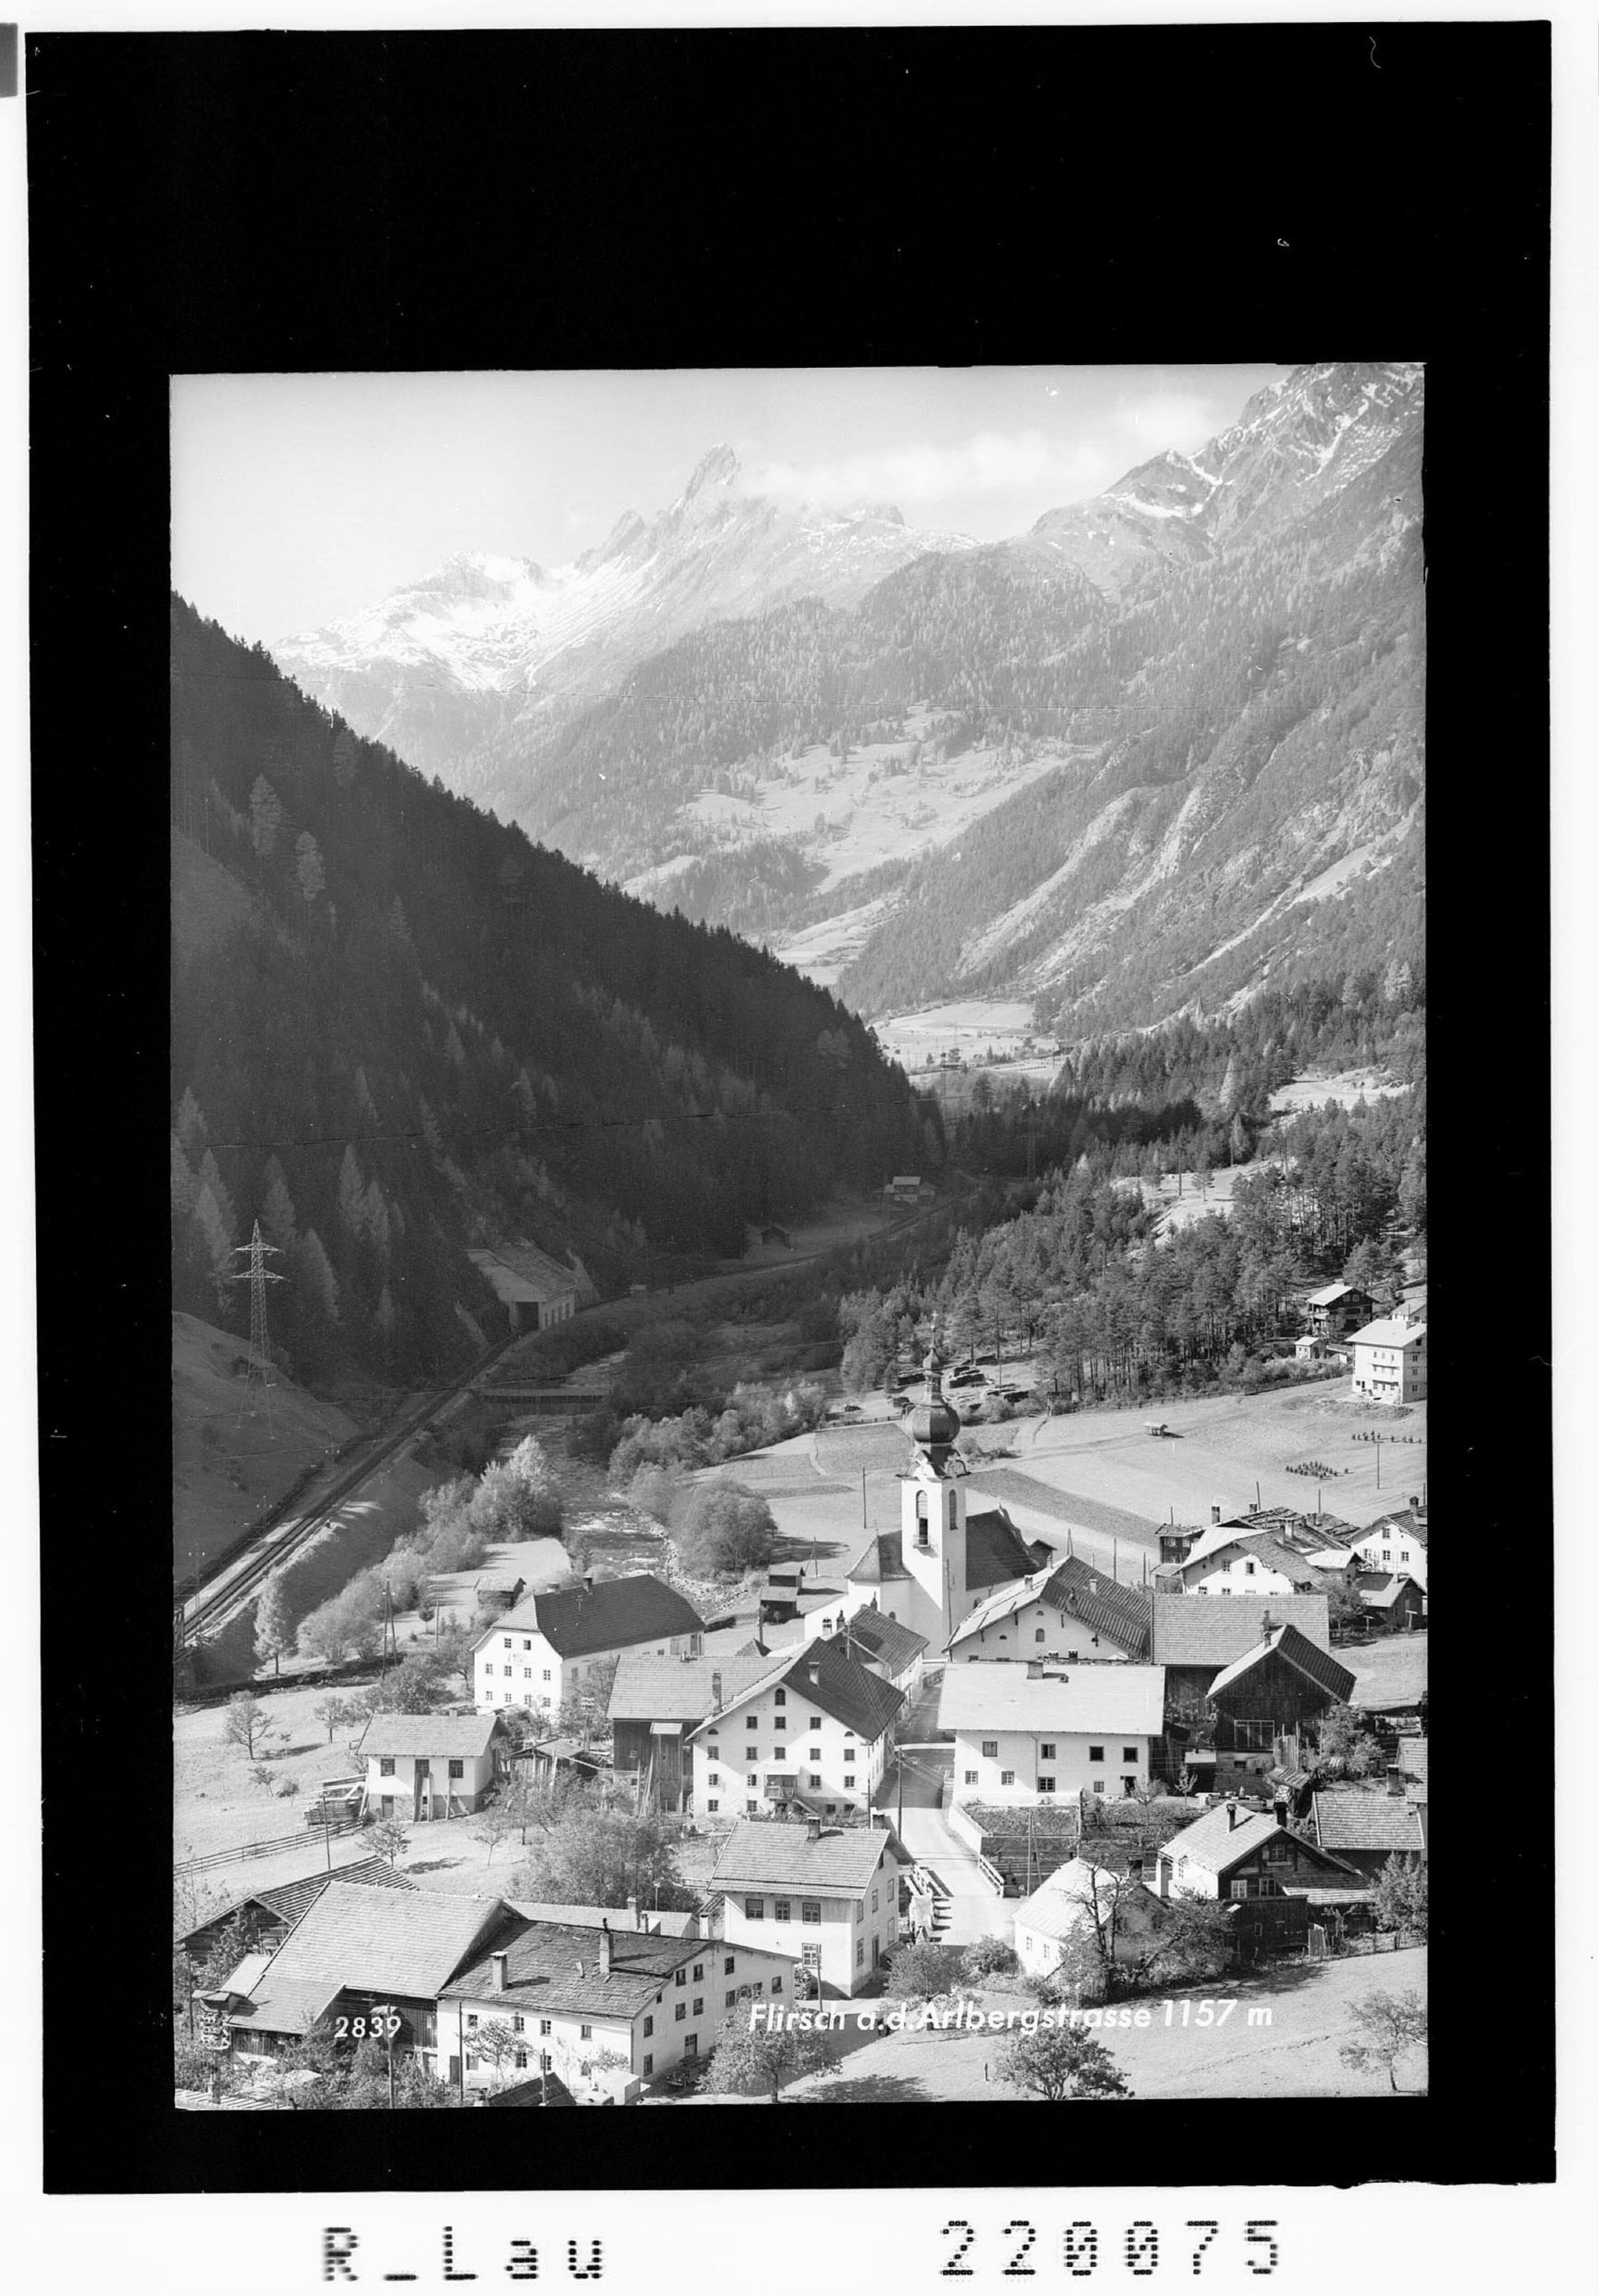 Flirsch an der Arlbergstrasse 1157 m></div>


    <hr>
    <div class=